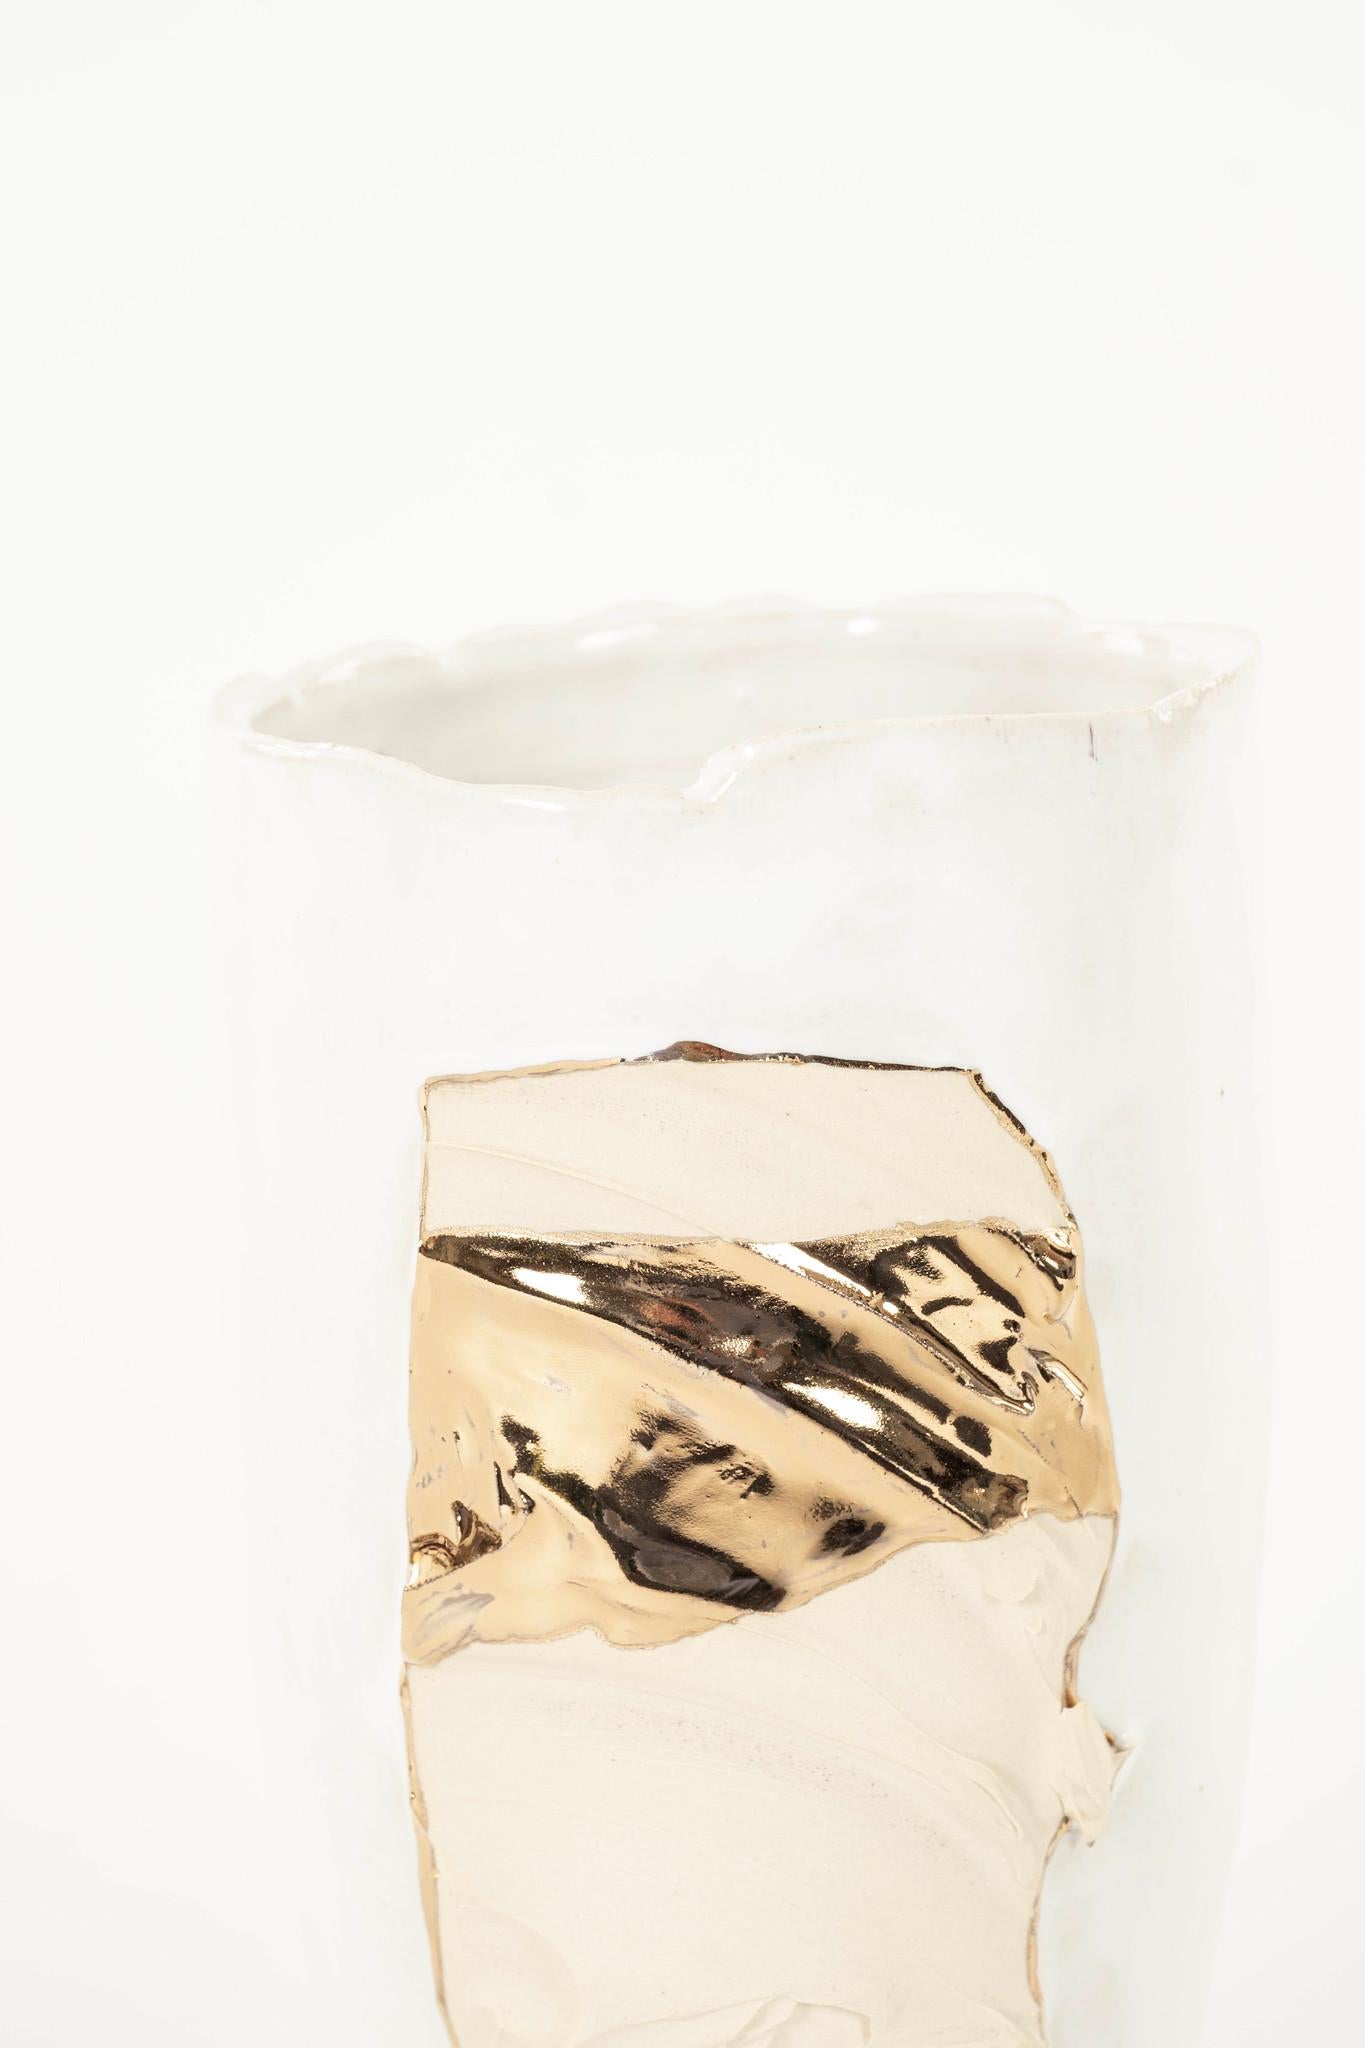 Handgedrehte, weiß glasierte Porzellanvase mit 24-karätiger Feuervergoldung.
Nordamerika, 21. C
Chase Gamblin

Chase Gamblin ist ein Künstler, der hauptsächlich mit Keramik arbeitet. Derzeit ist er akademischer Spezialist und Studio-Koordinator für